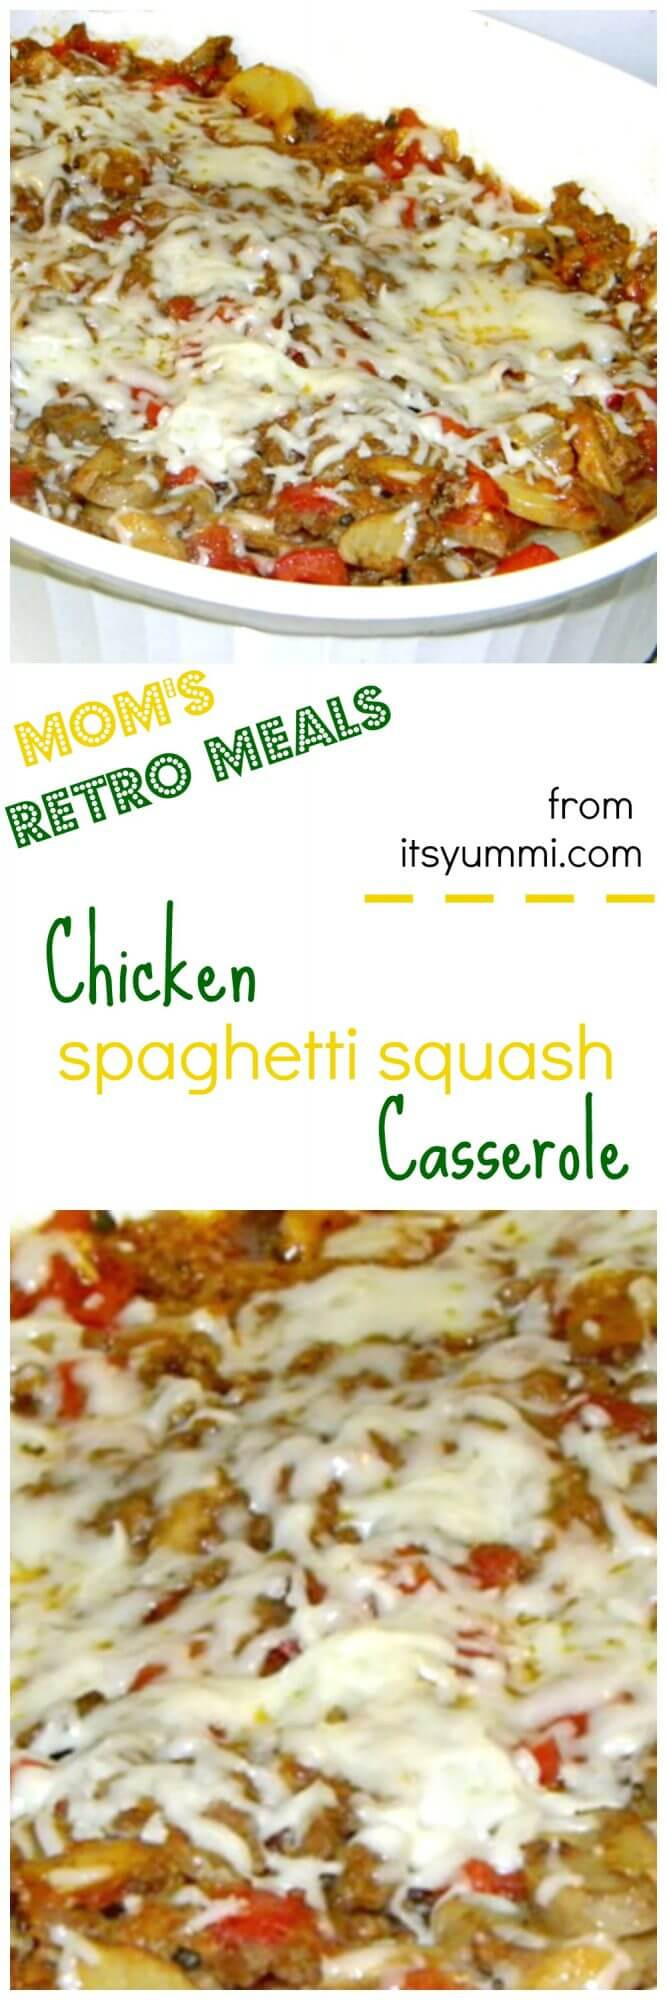 Chicken And Squash Casserole
 Chicken Spaghetti Squash Casserole Retro Meals It s Yummi